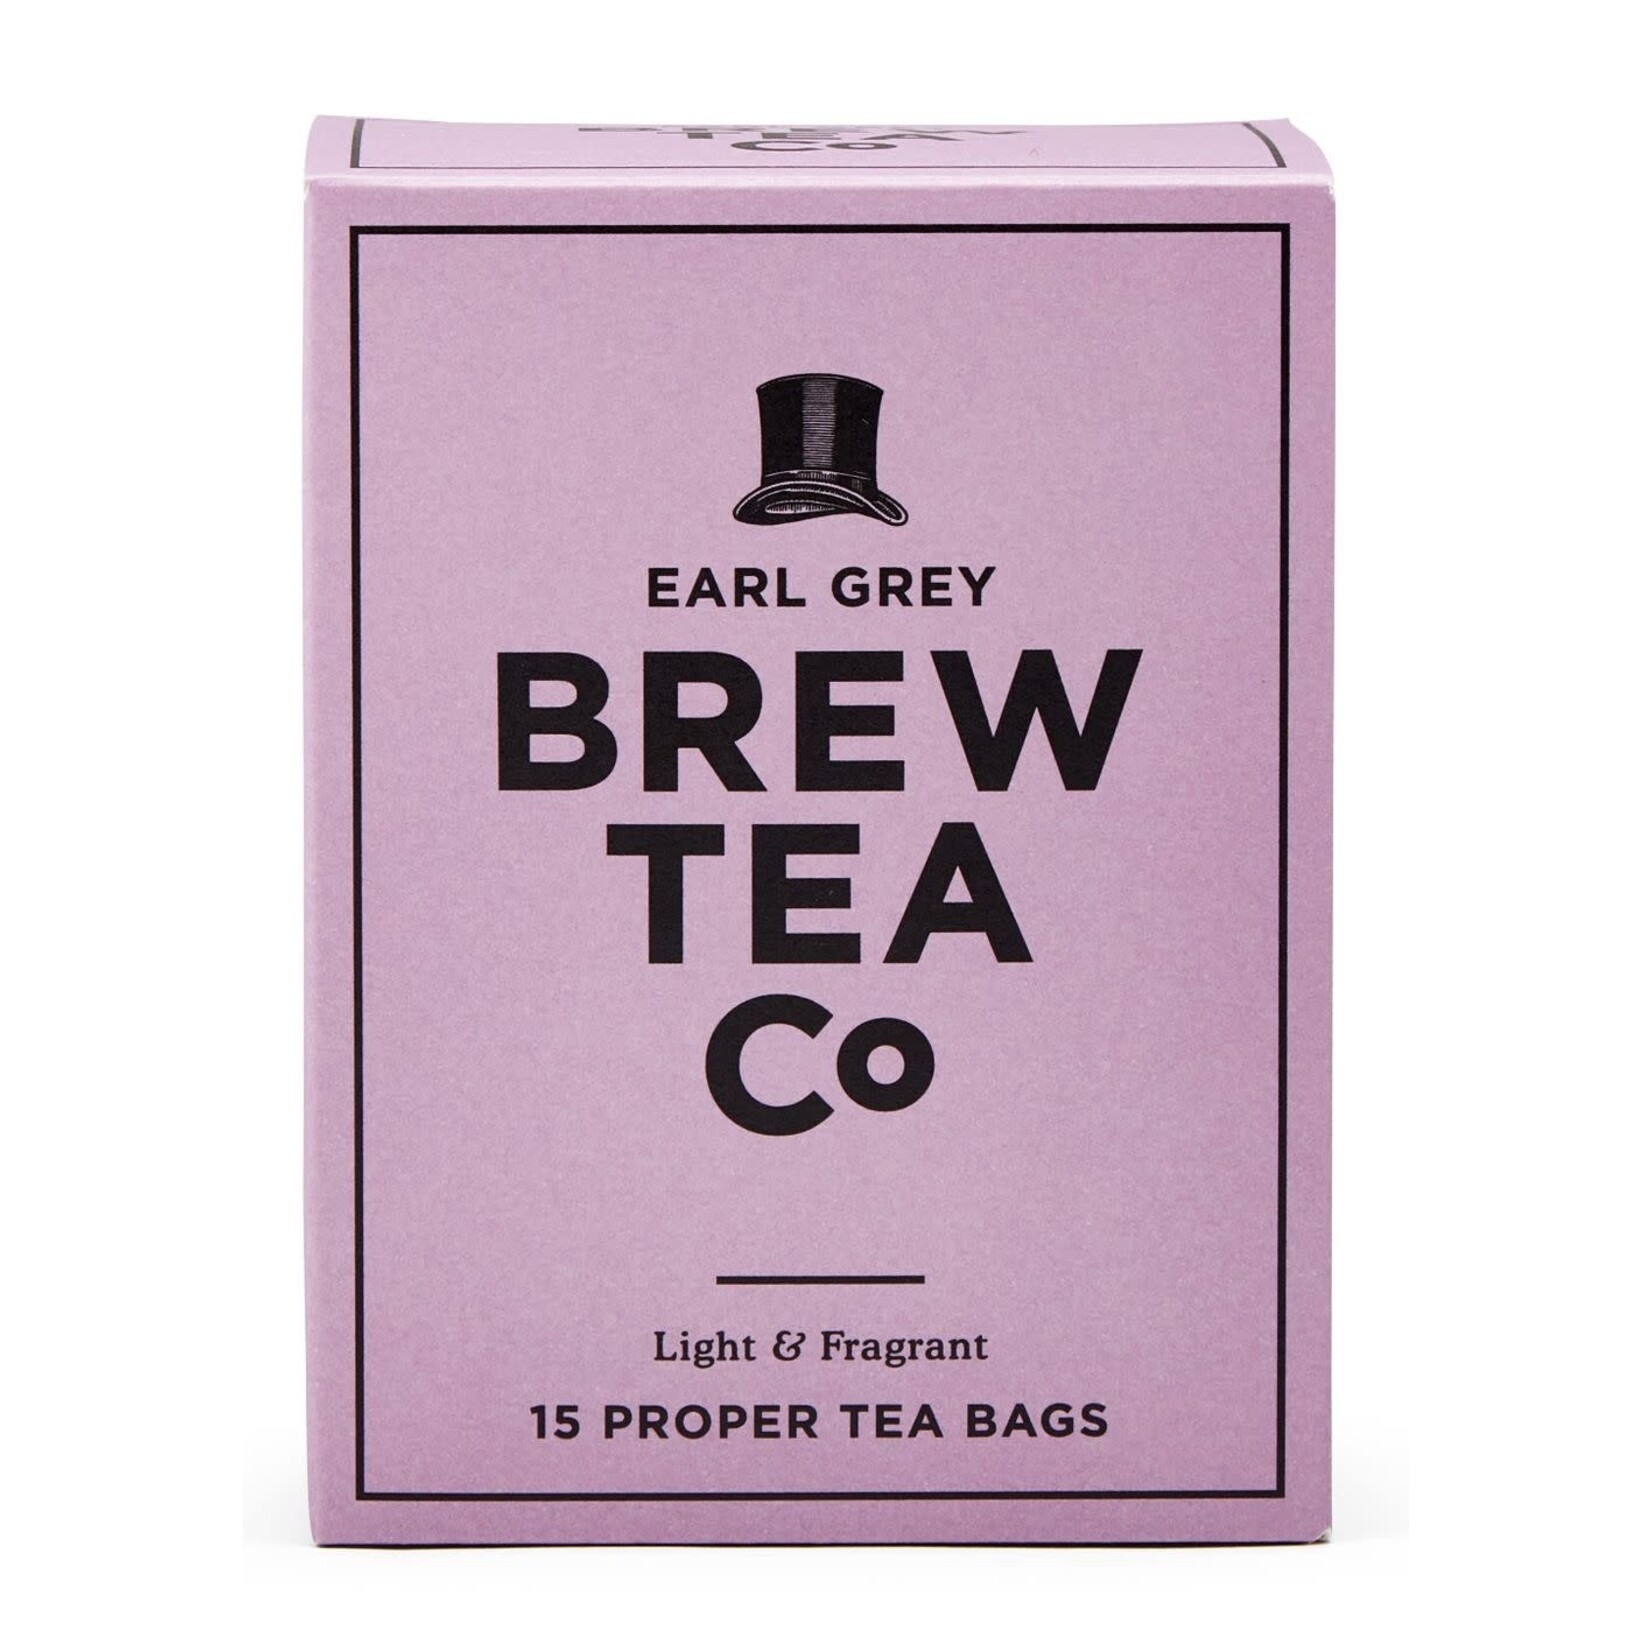 Brew Tea Co. Proper Tea Bag / Earl Grey